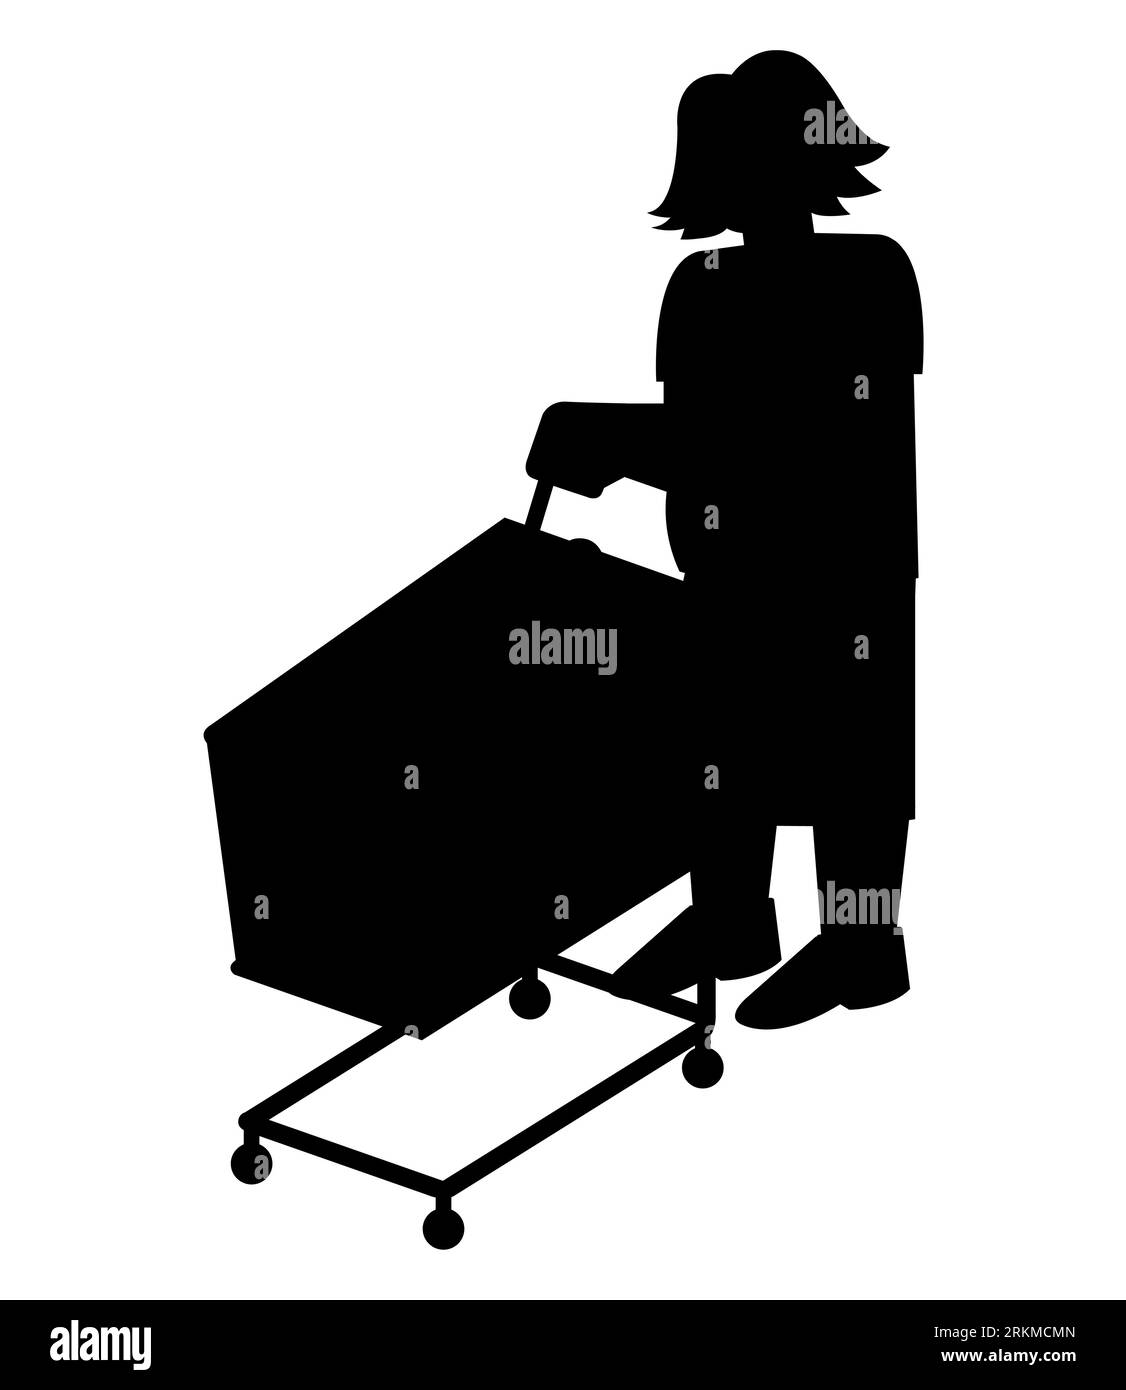 Schwarze Silhouette einer Frau, die mit einem Einkaufswagen shopft. Flache Vektorillustration von Kunden, die Dinge kaufen. Konsumentenkonzept für Banner, Stock Vektor